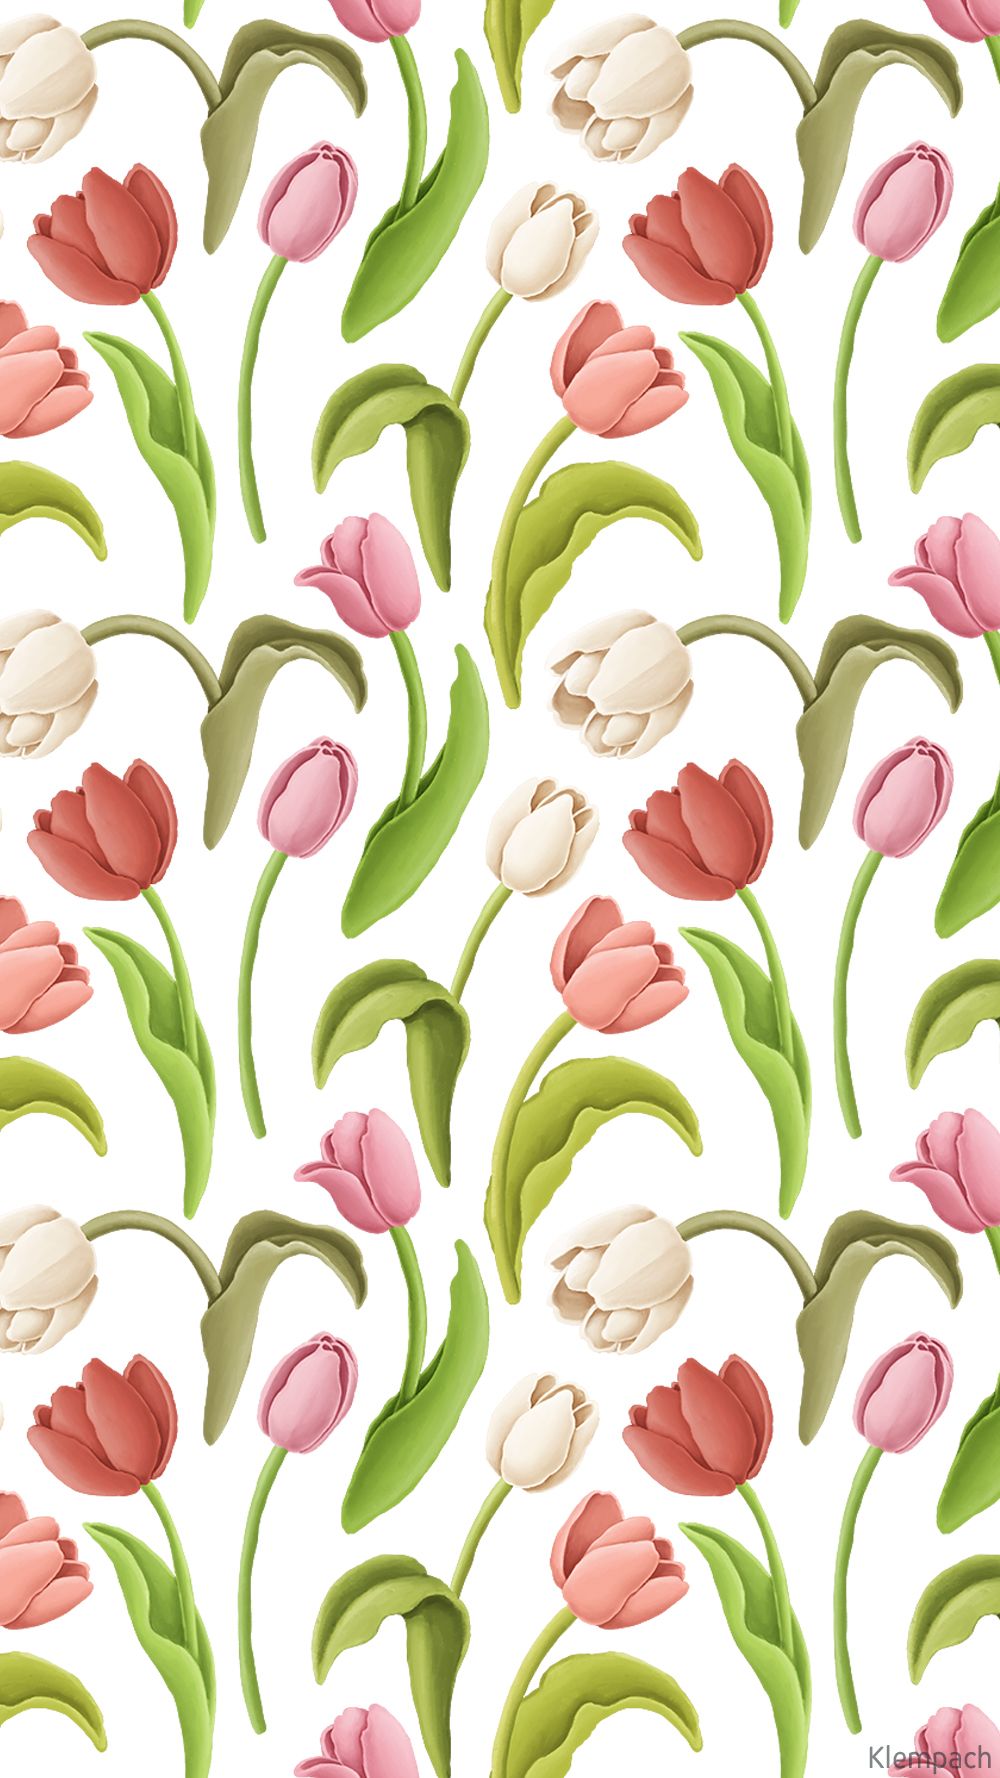 Tulip flowers, frames, patterns. Flower wallpaper, Cute desktop wallpaper, Watercolor tulips